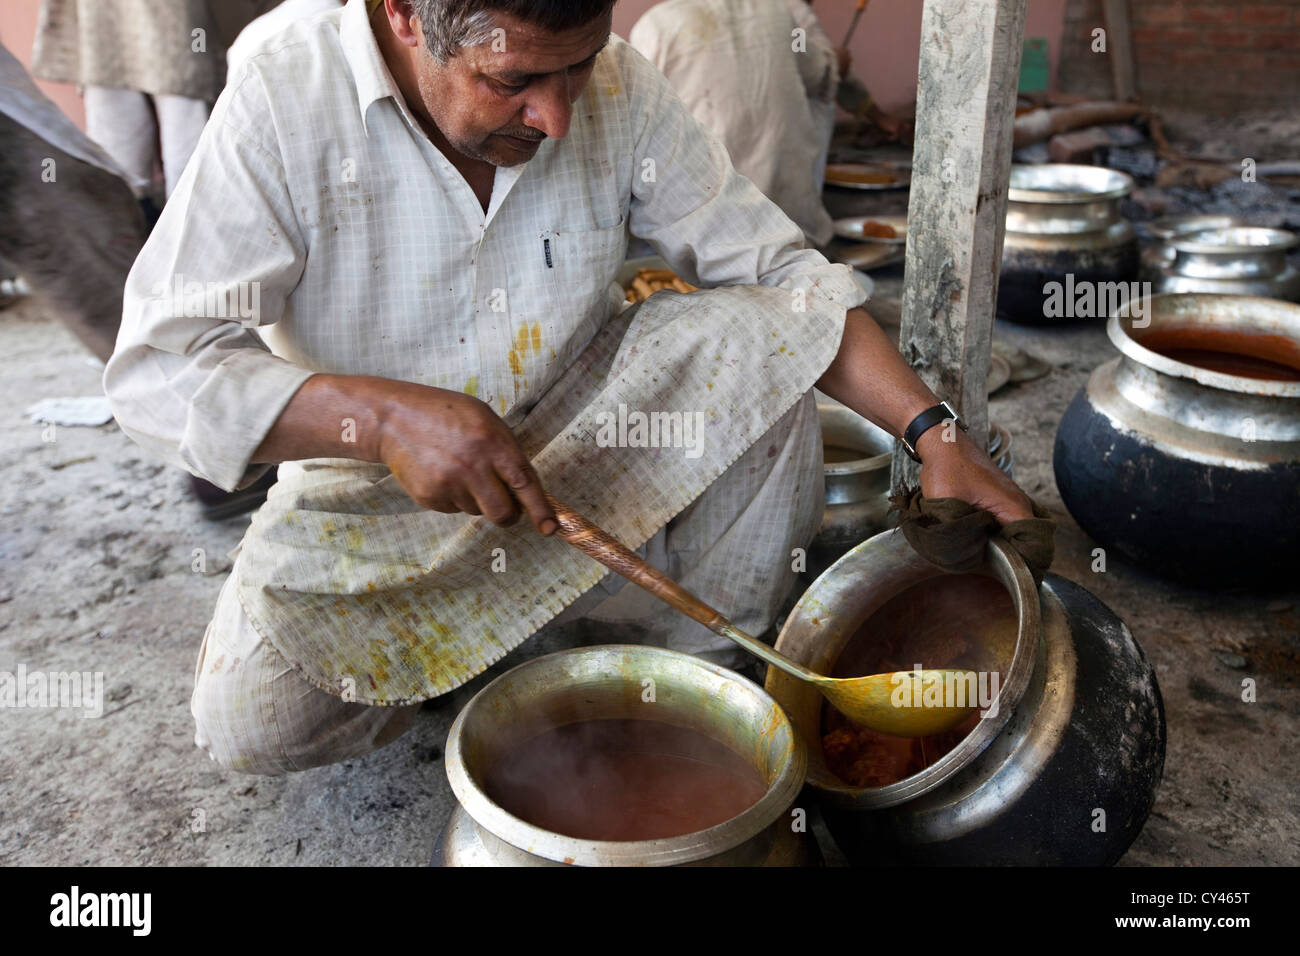 Un waza ou cuisiner dans la tradition du Cachemire et cuisiniers prépare la nourriture pour une fête traditionnelle Wazwan. Srinagar, au Cachemire, en Inde Banque D'Images